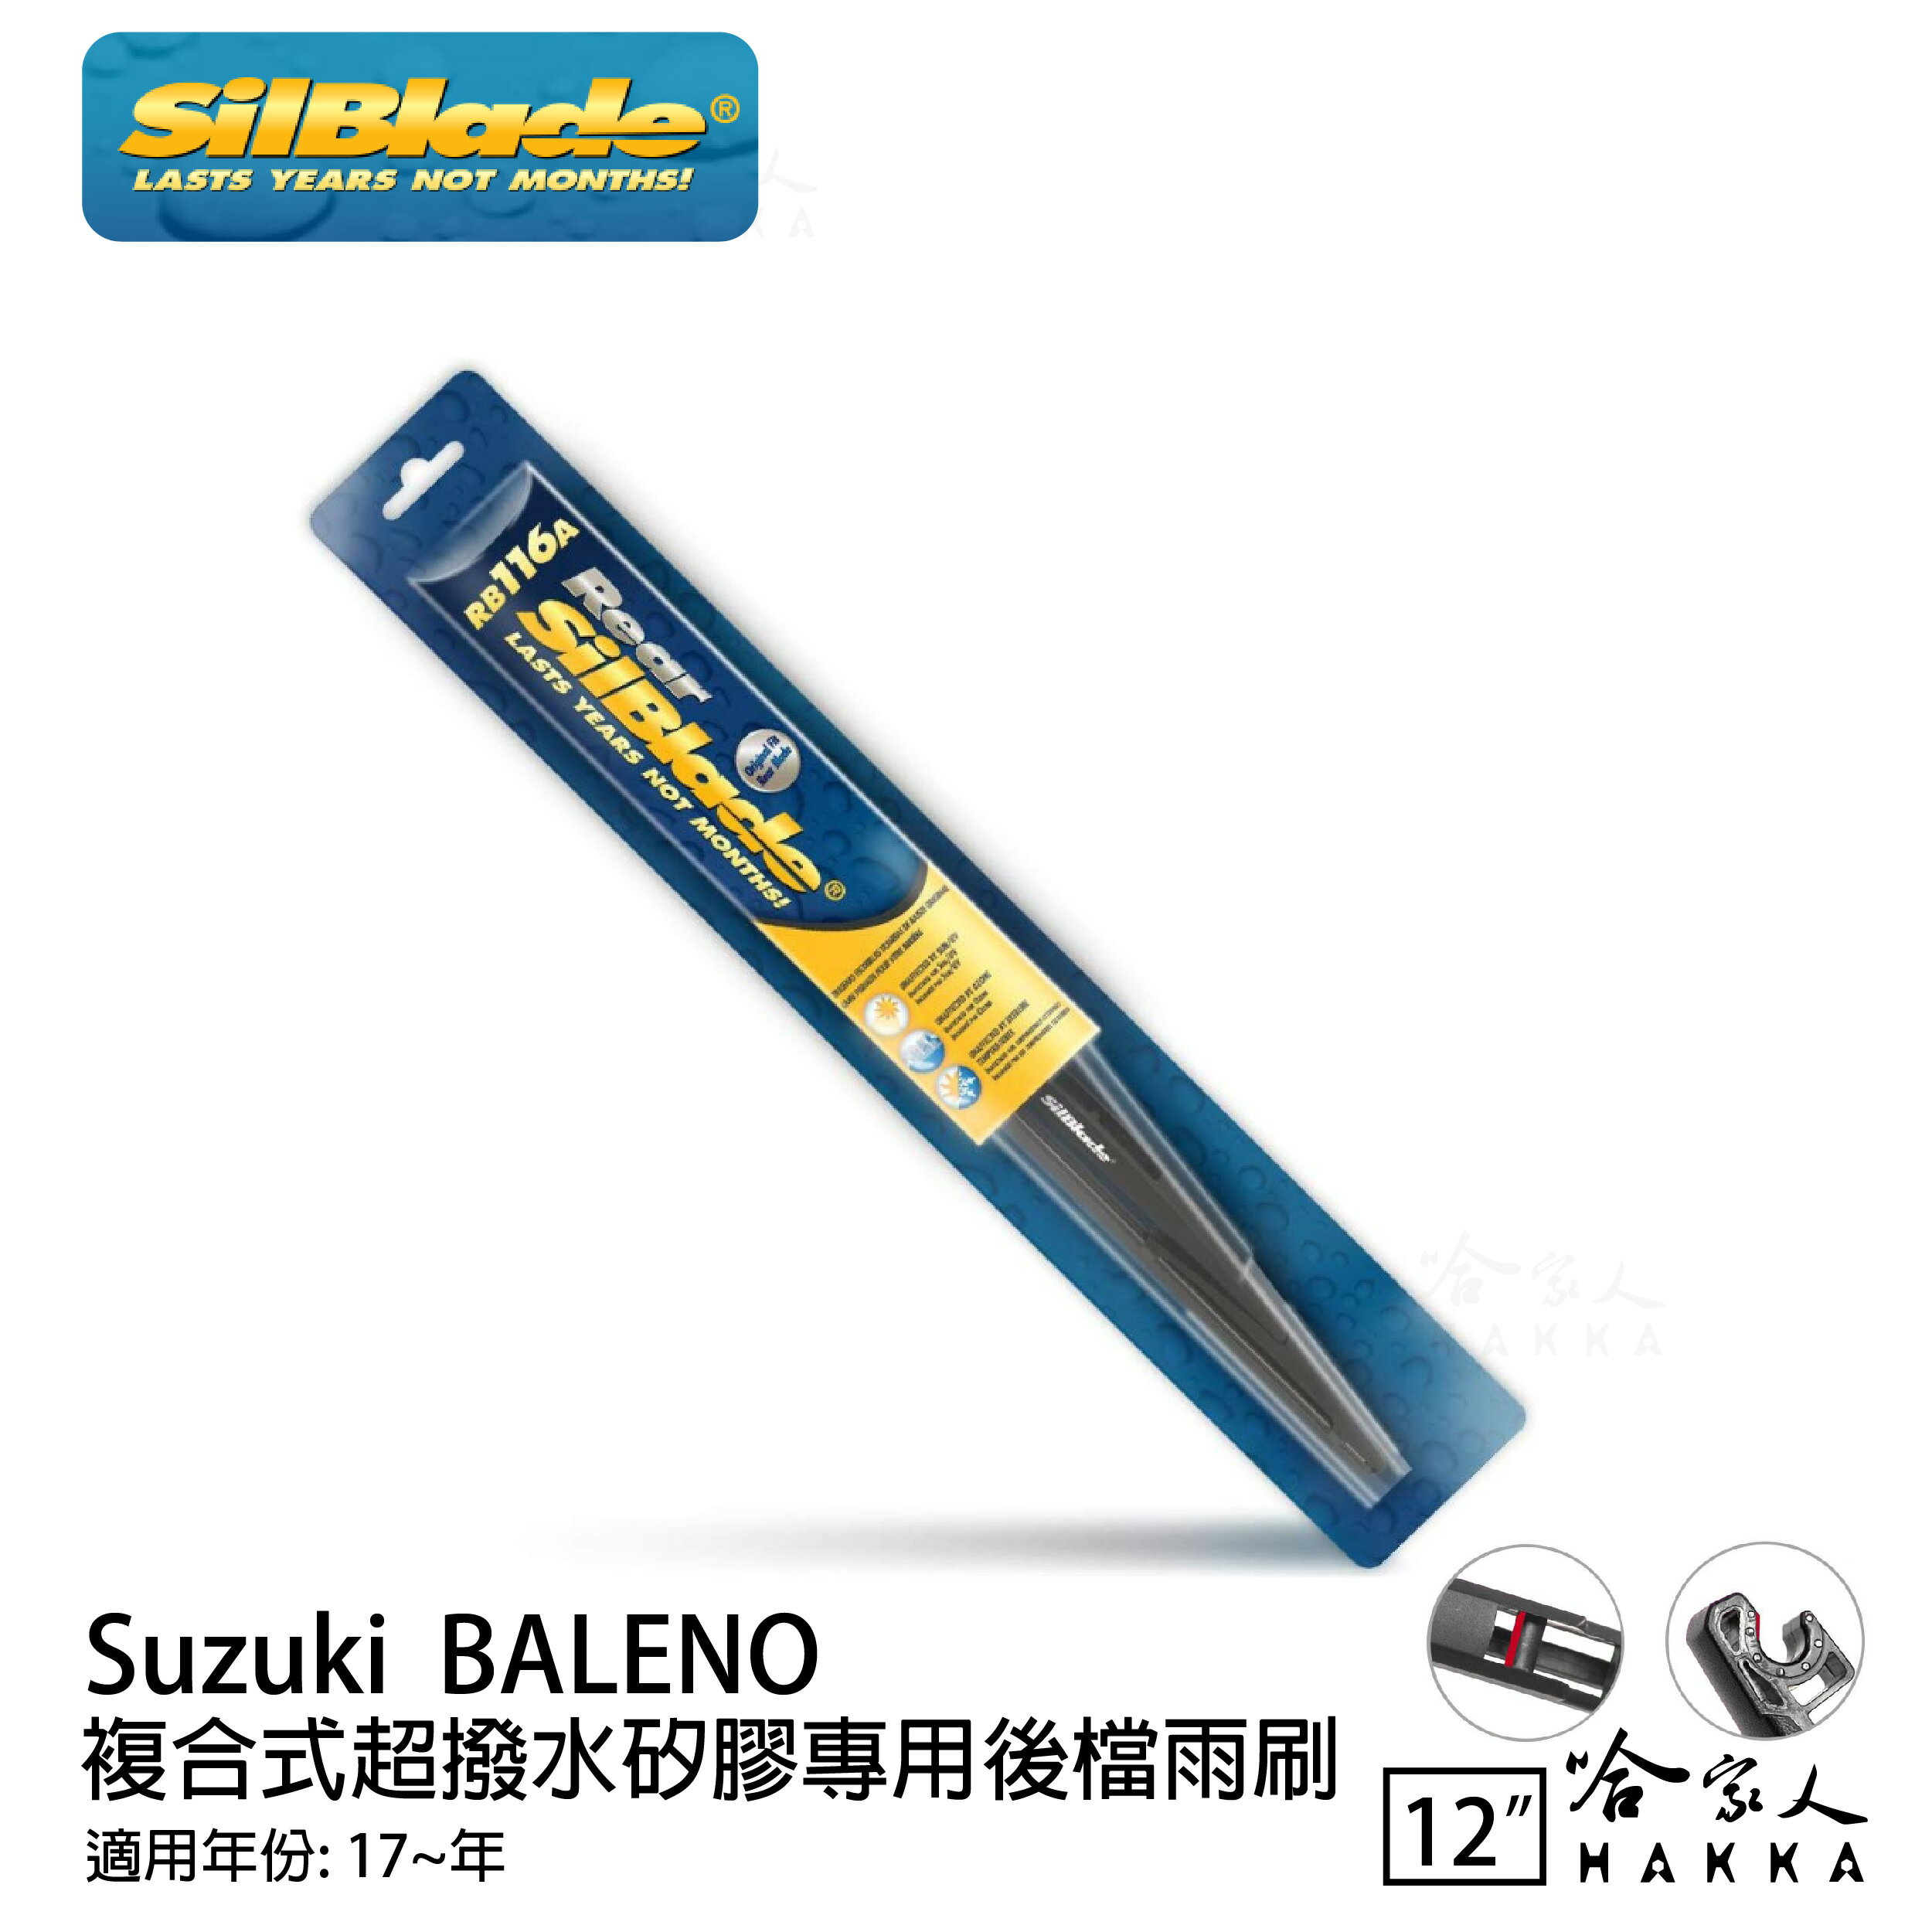 Suzuki Baleno 矽膠 後擋專用雨刷 12吋 SilBlade 17~年 後擋雨刷 哈家人